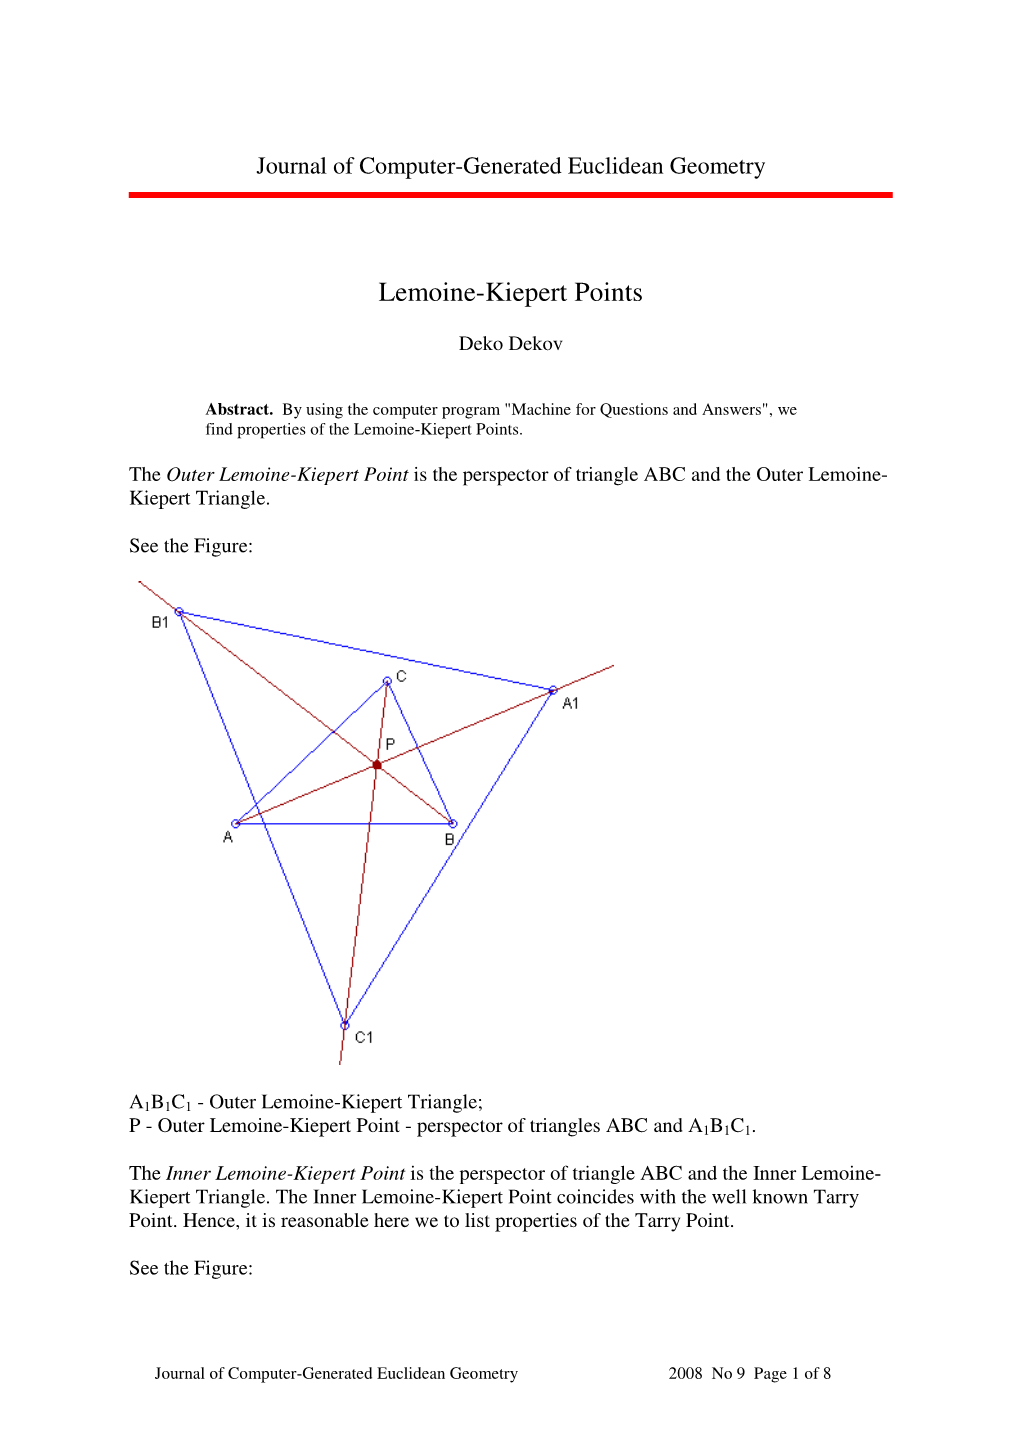 Deko Dekov, Lemoine-Kiepert Points PDF, 84